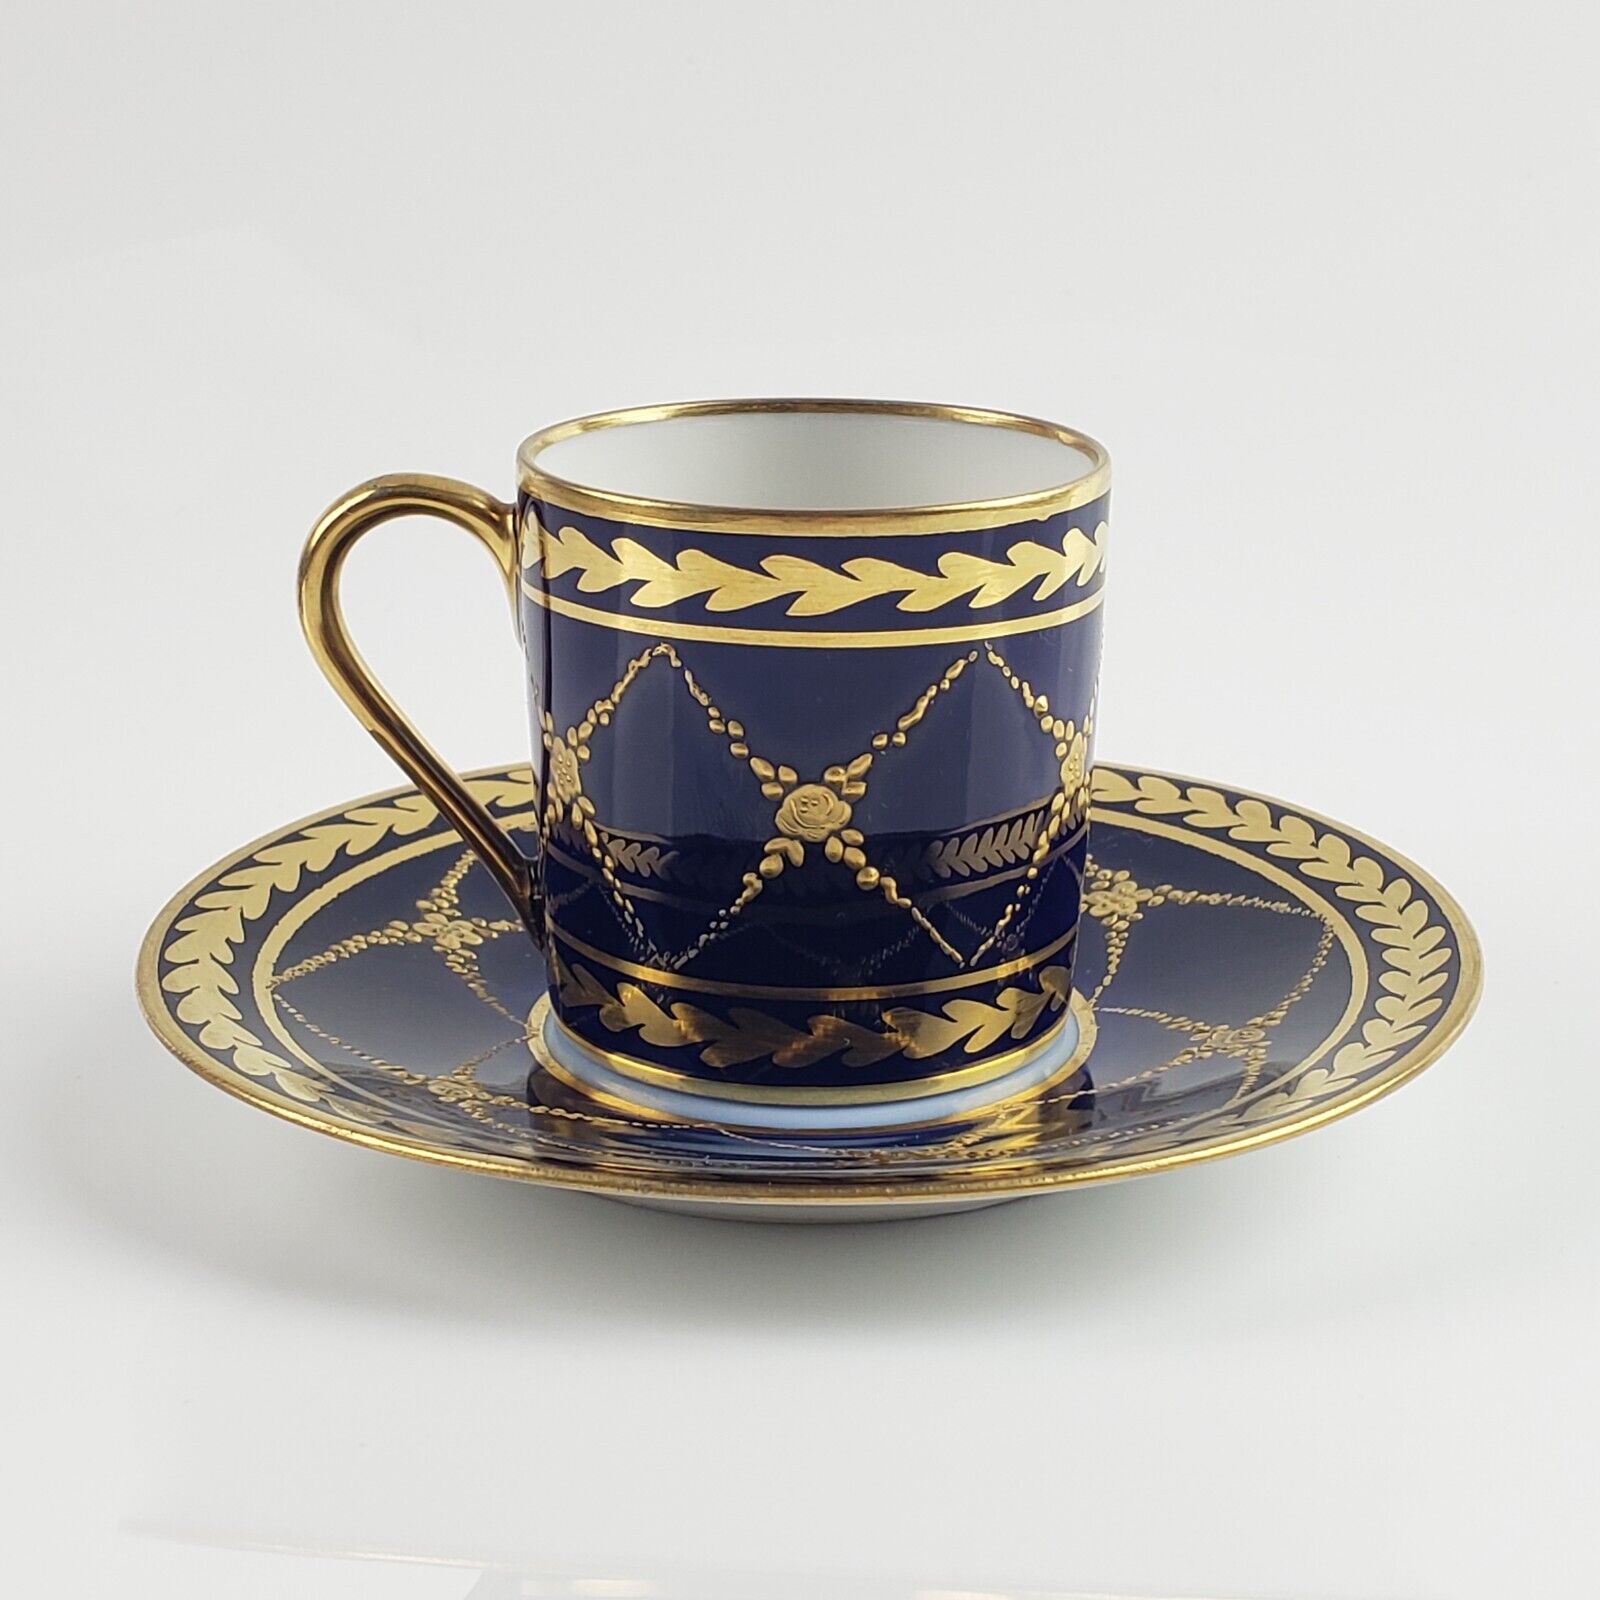 1771 Sevres Cobalt Blue & Gold Flowers Demitasse Cup & Saucer S mark